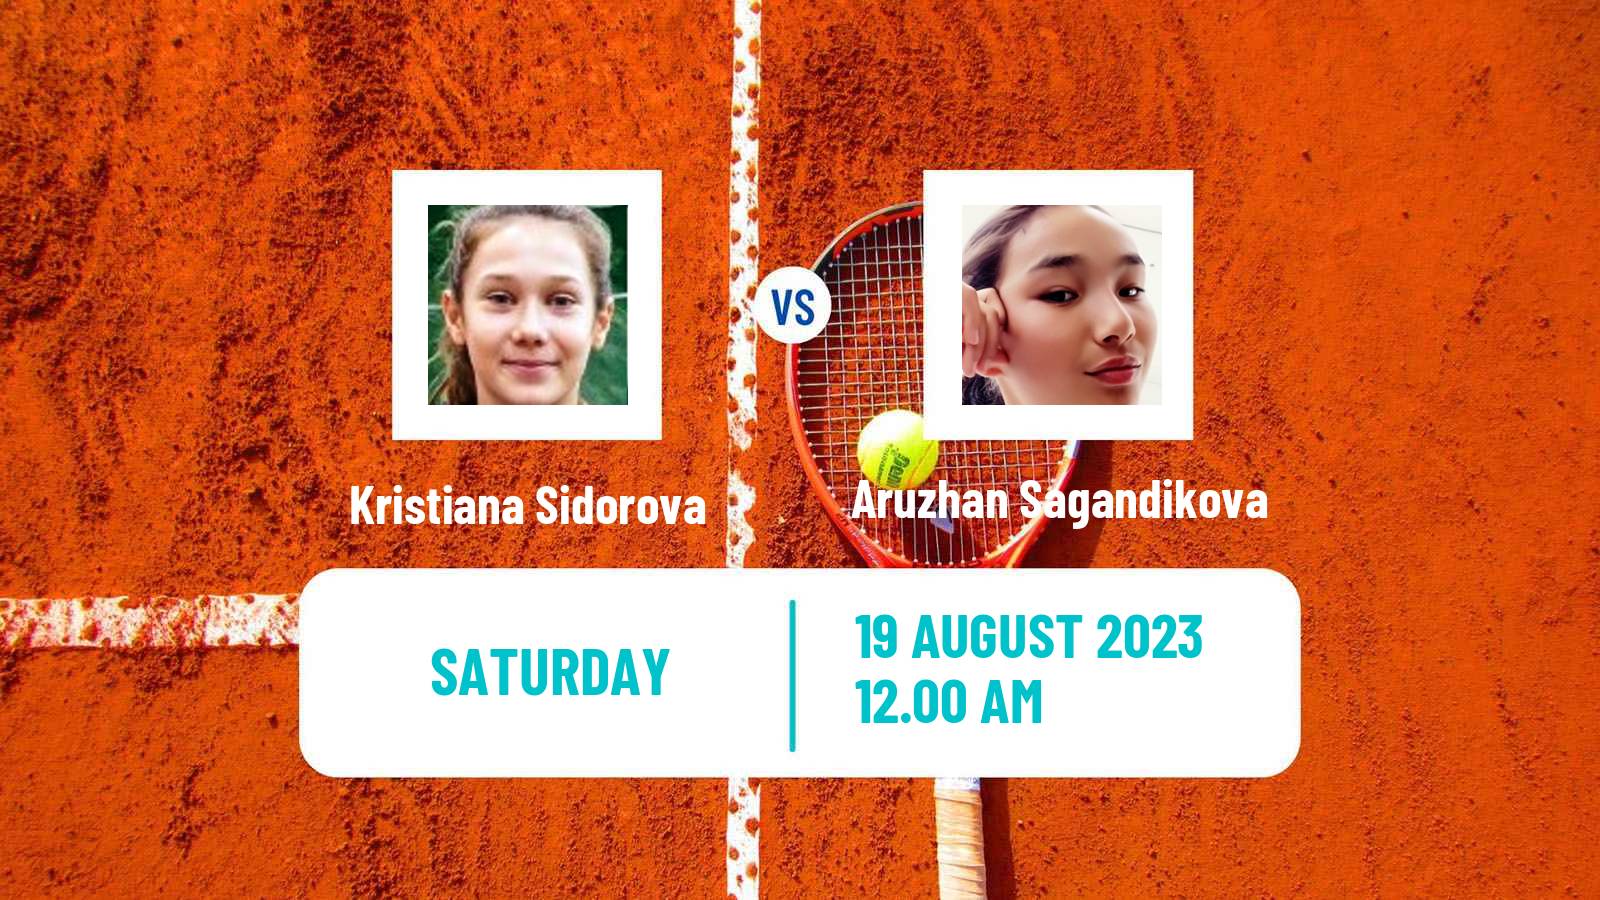 Tennis ITF W15 Ust Kamenogorsk 2 Women Kristiana Sidorova - Aruzhan Sagandikova